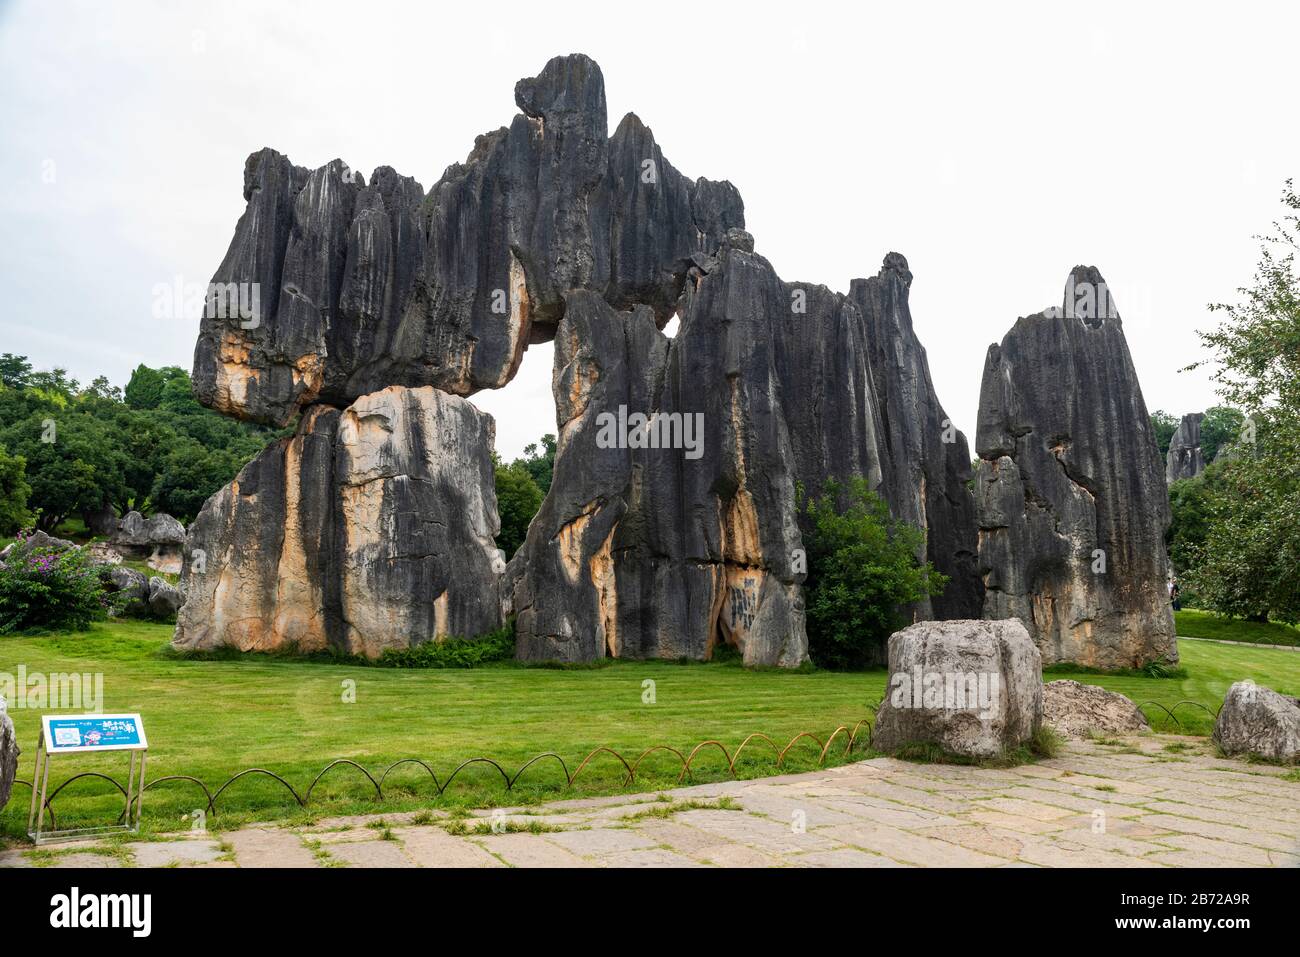 El Bosque de Piedra en Kunming, Yunnan es una maravilla geológica de piedra caliza que cubre más de 80 hectáreas y fue declarado Patrimonio de la Humanidad por la Unesco. Foto de stock